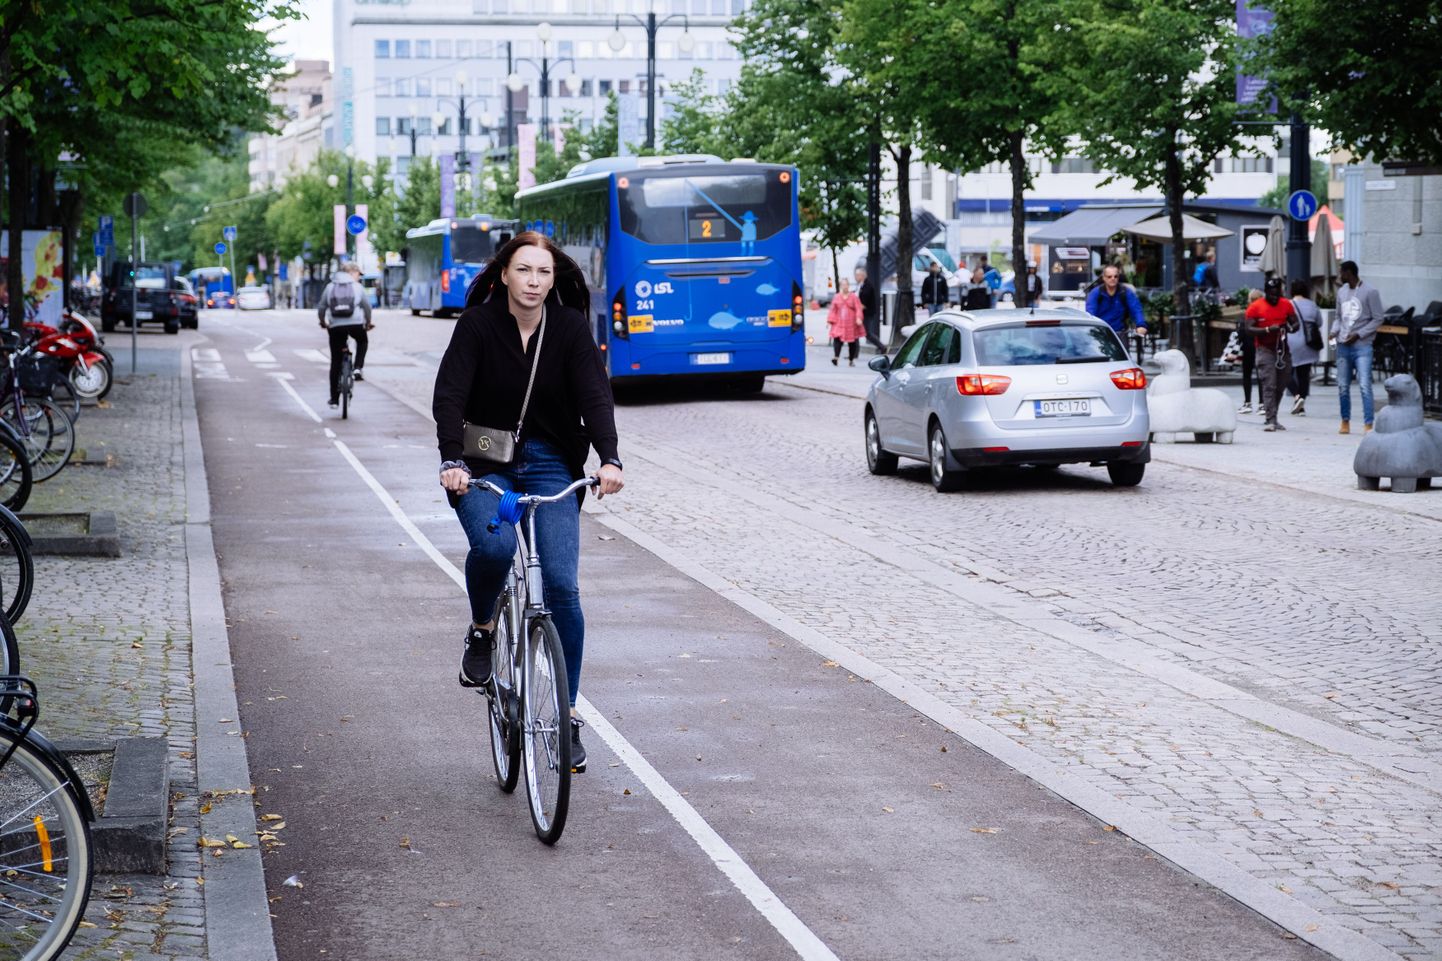 Soomes Lahtis meelitatakse inimesi mobiilirakenduse abil kasutama autode asemel ühistransporti ja jalgrattaid või käima jala.